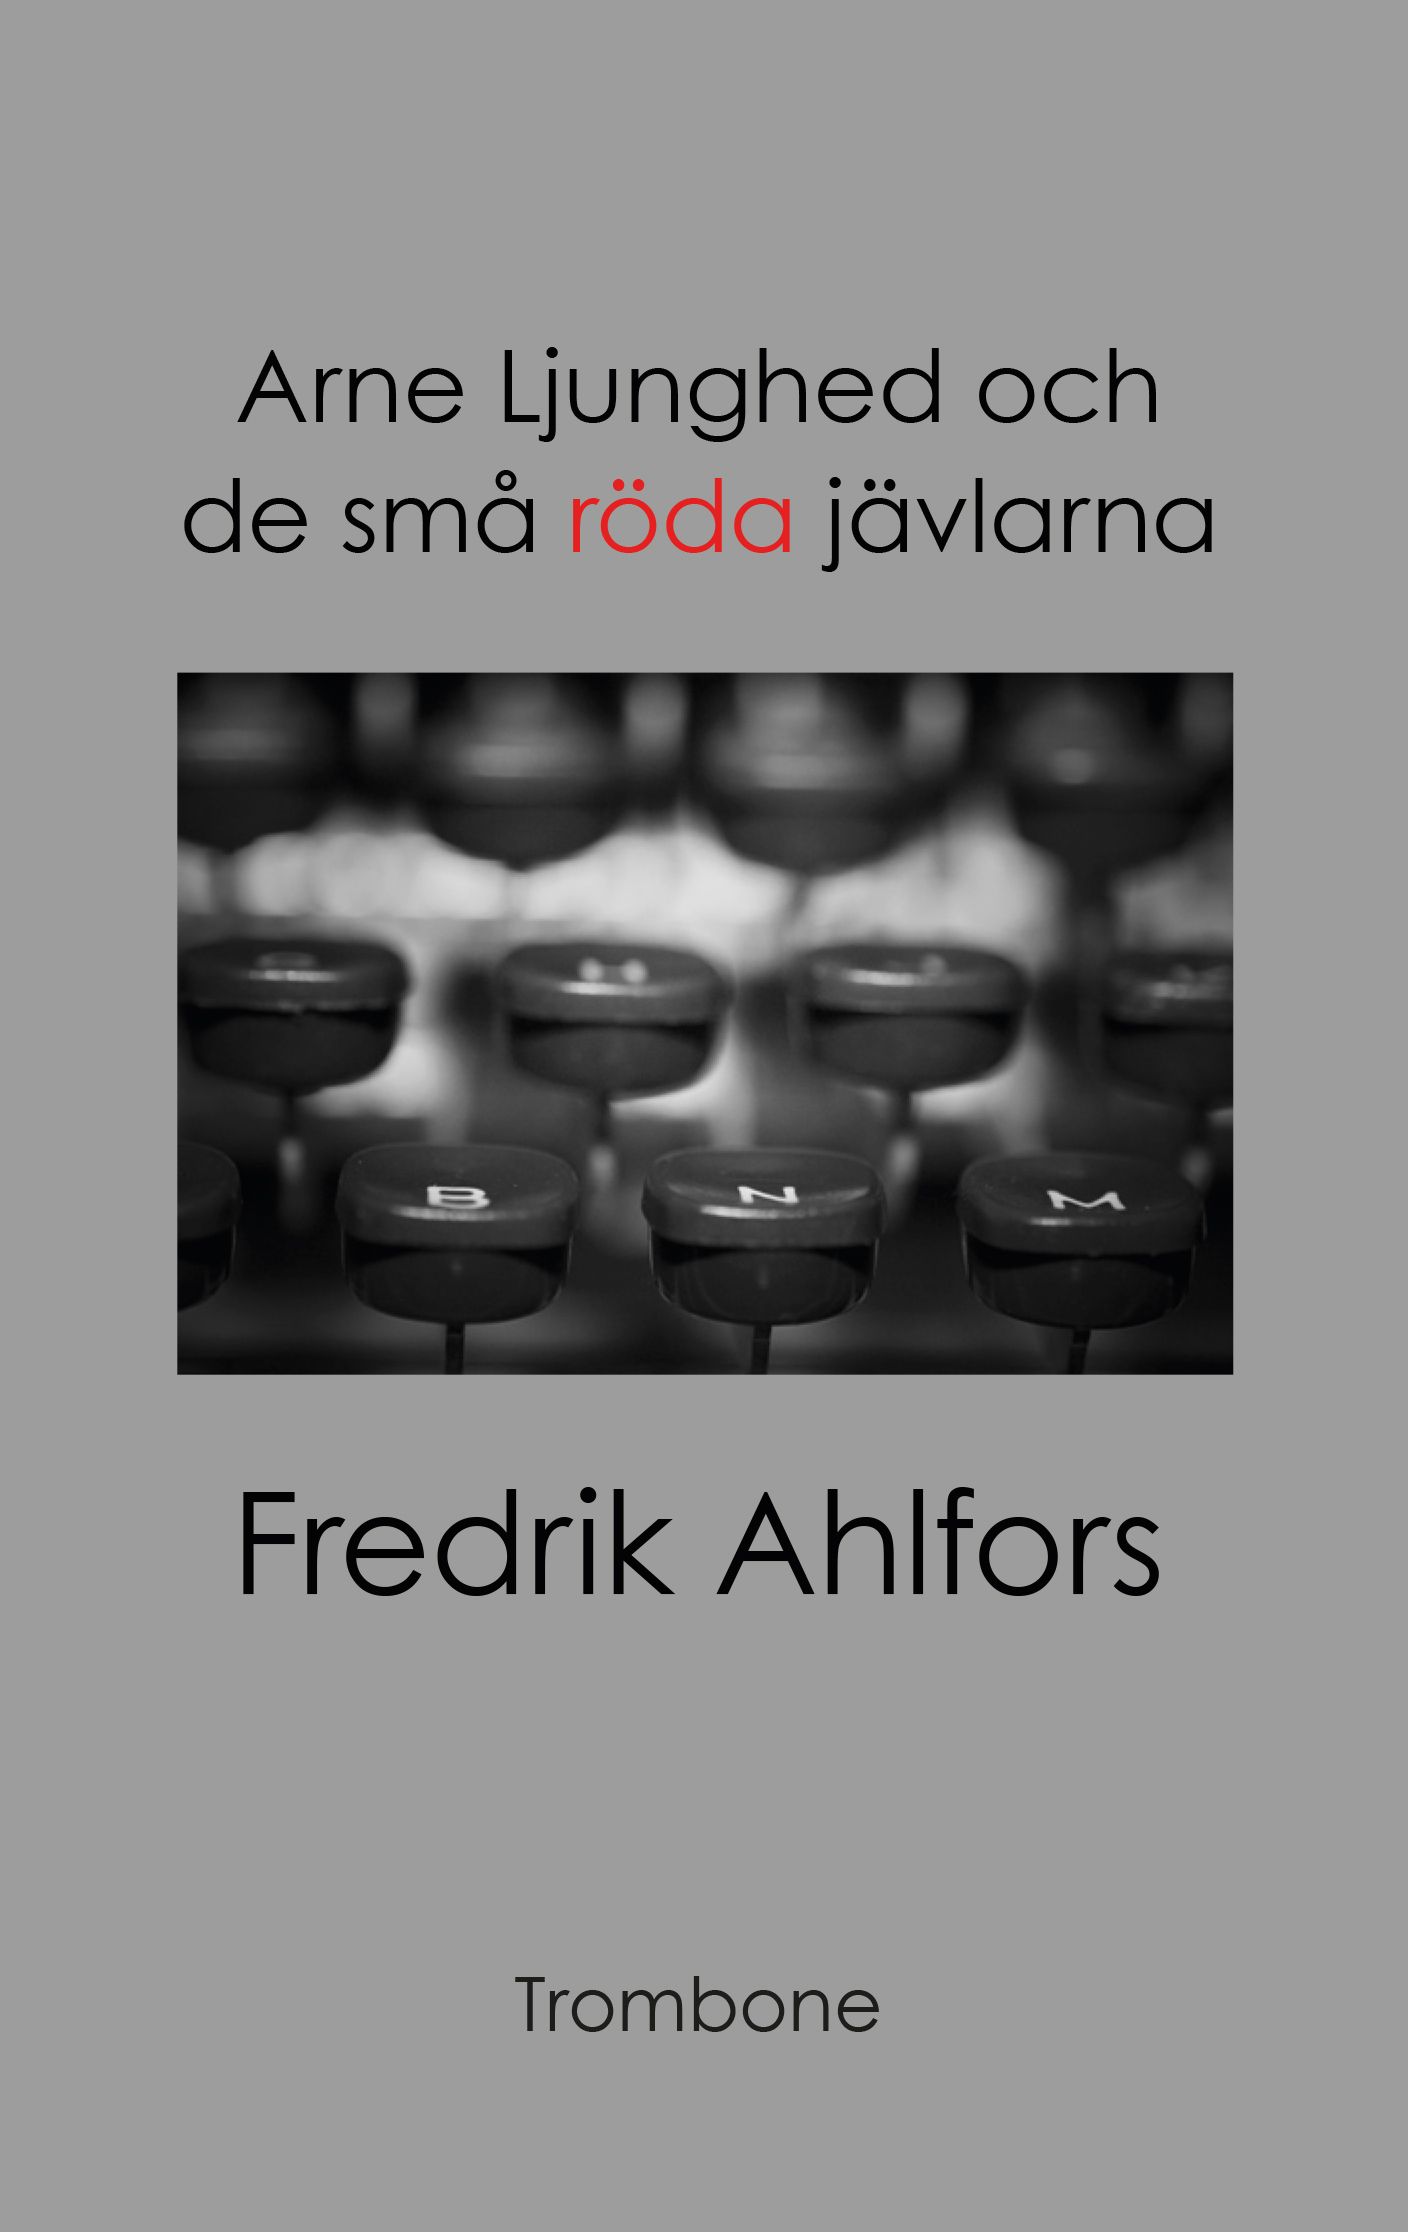 Arne Ljunghed och de små röda jävlarna, eBook by Fredrik Ahlfors